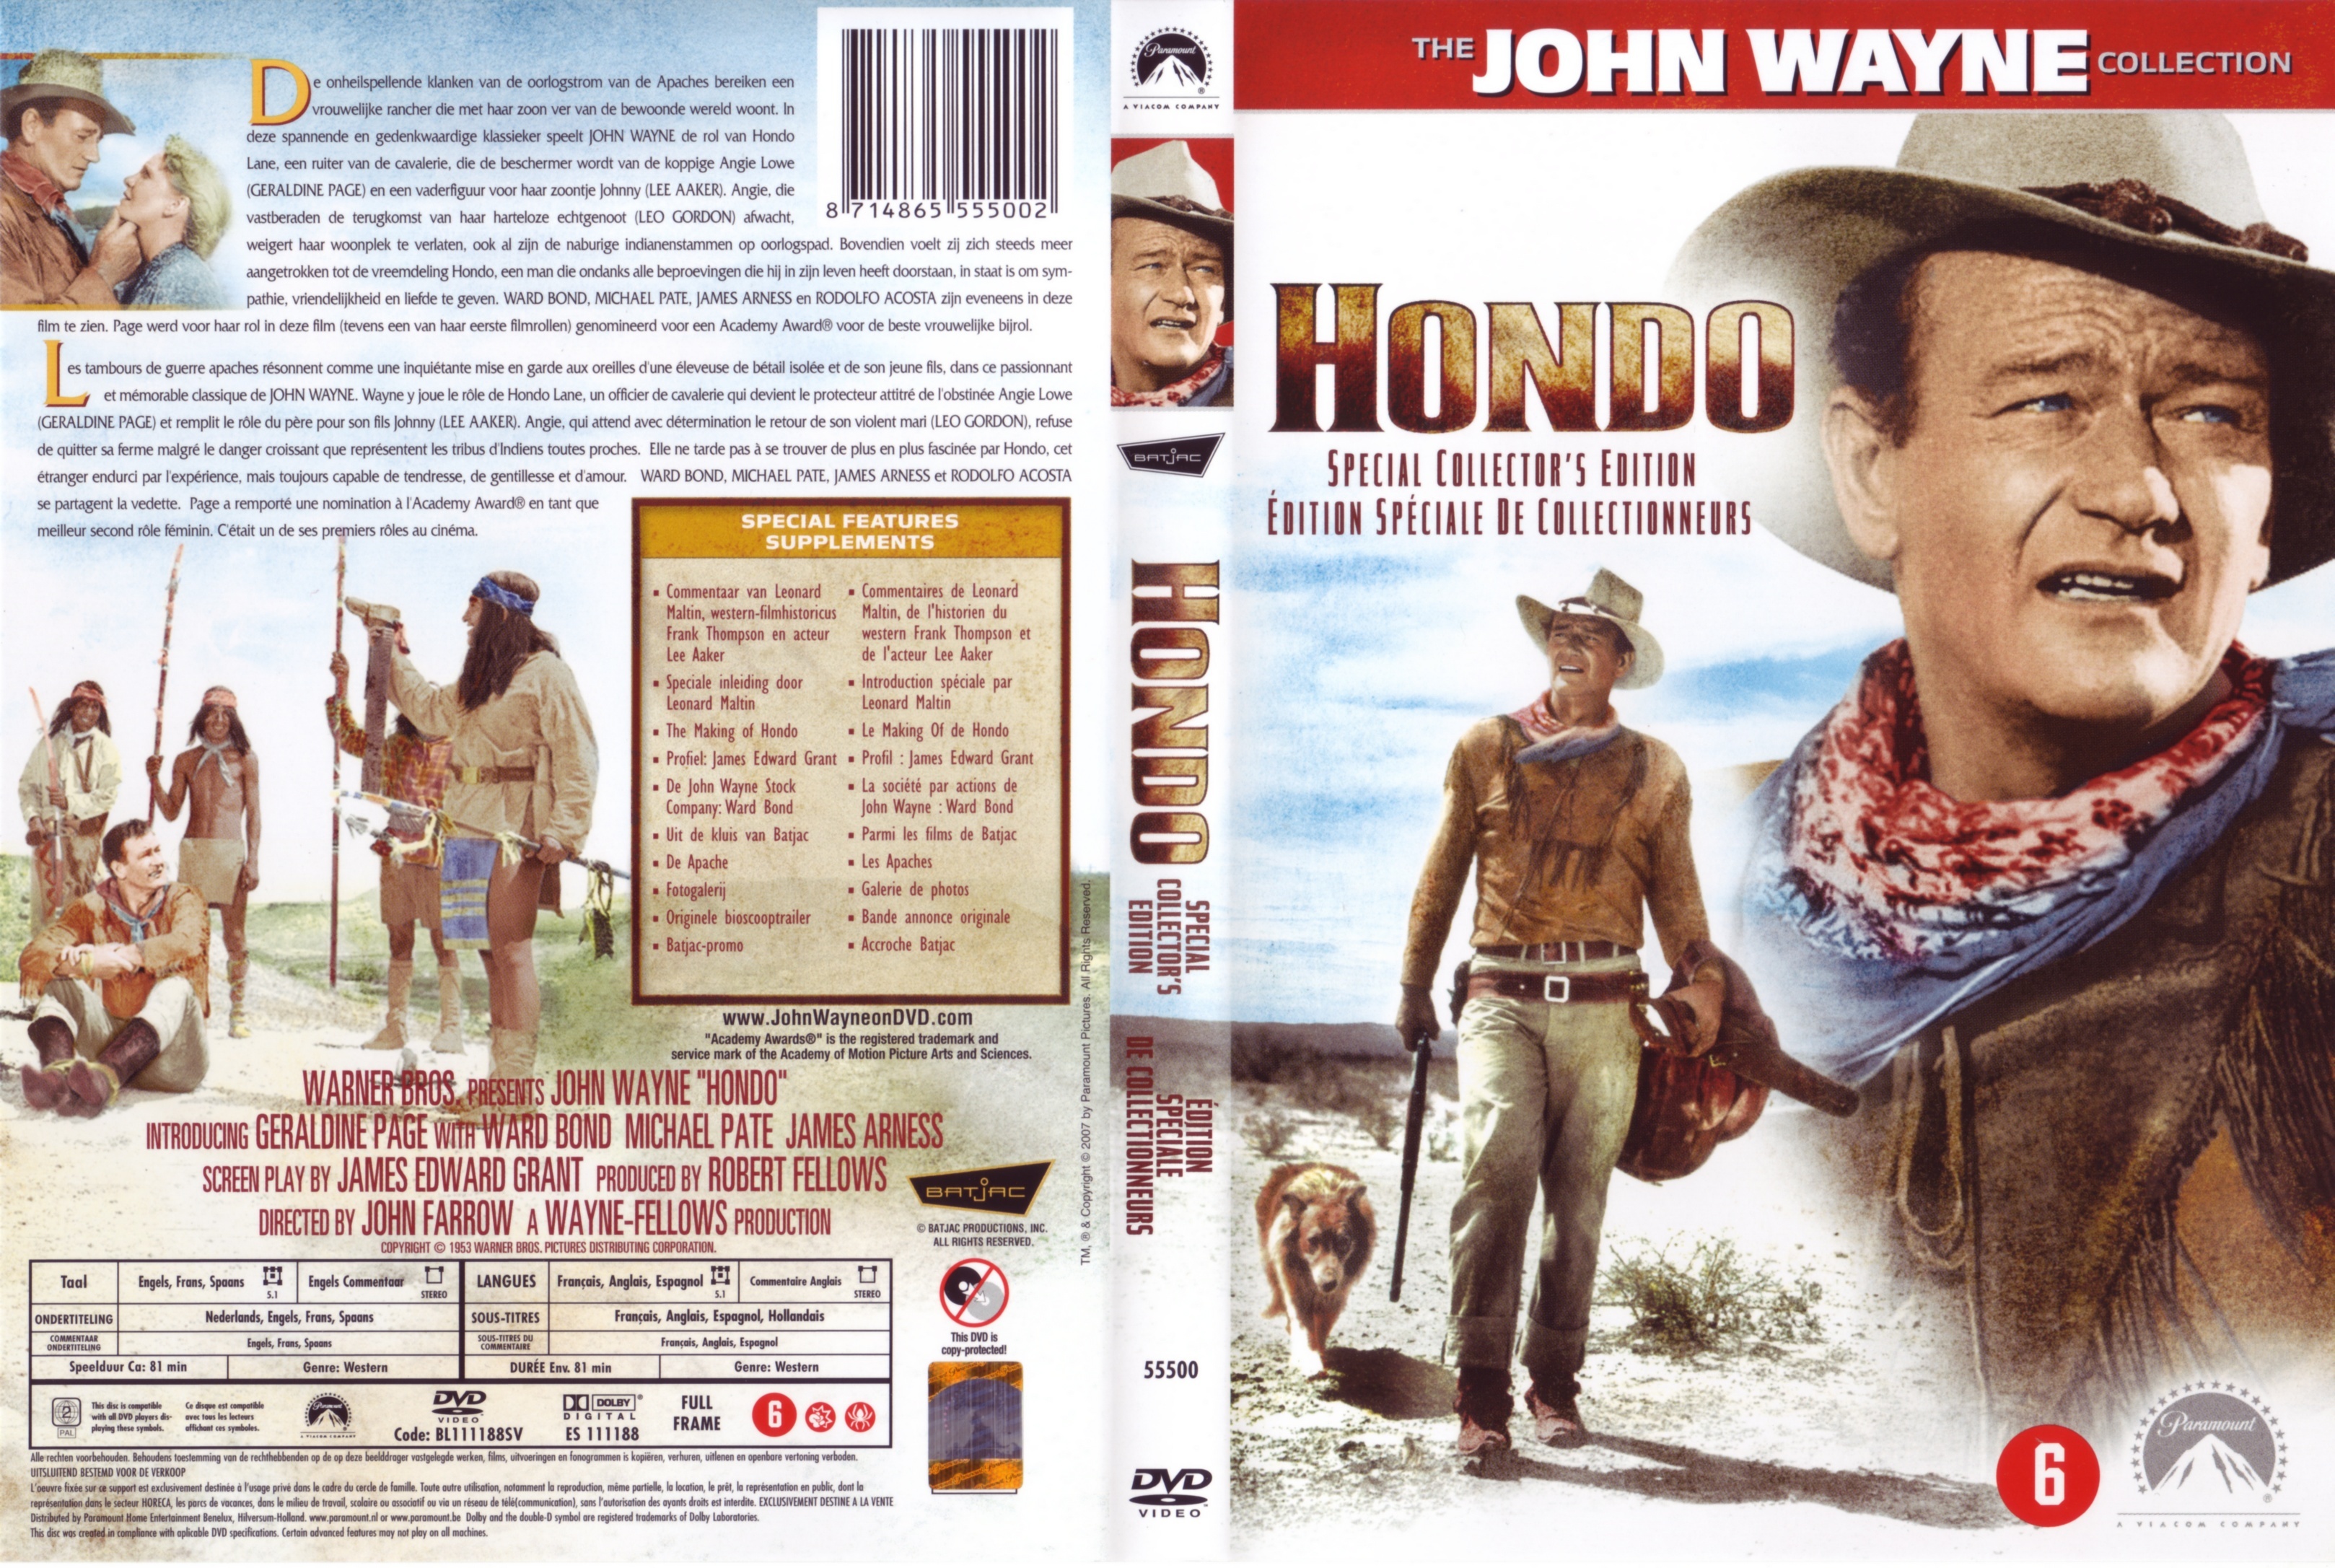 Jaquette DVD Hondo v2